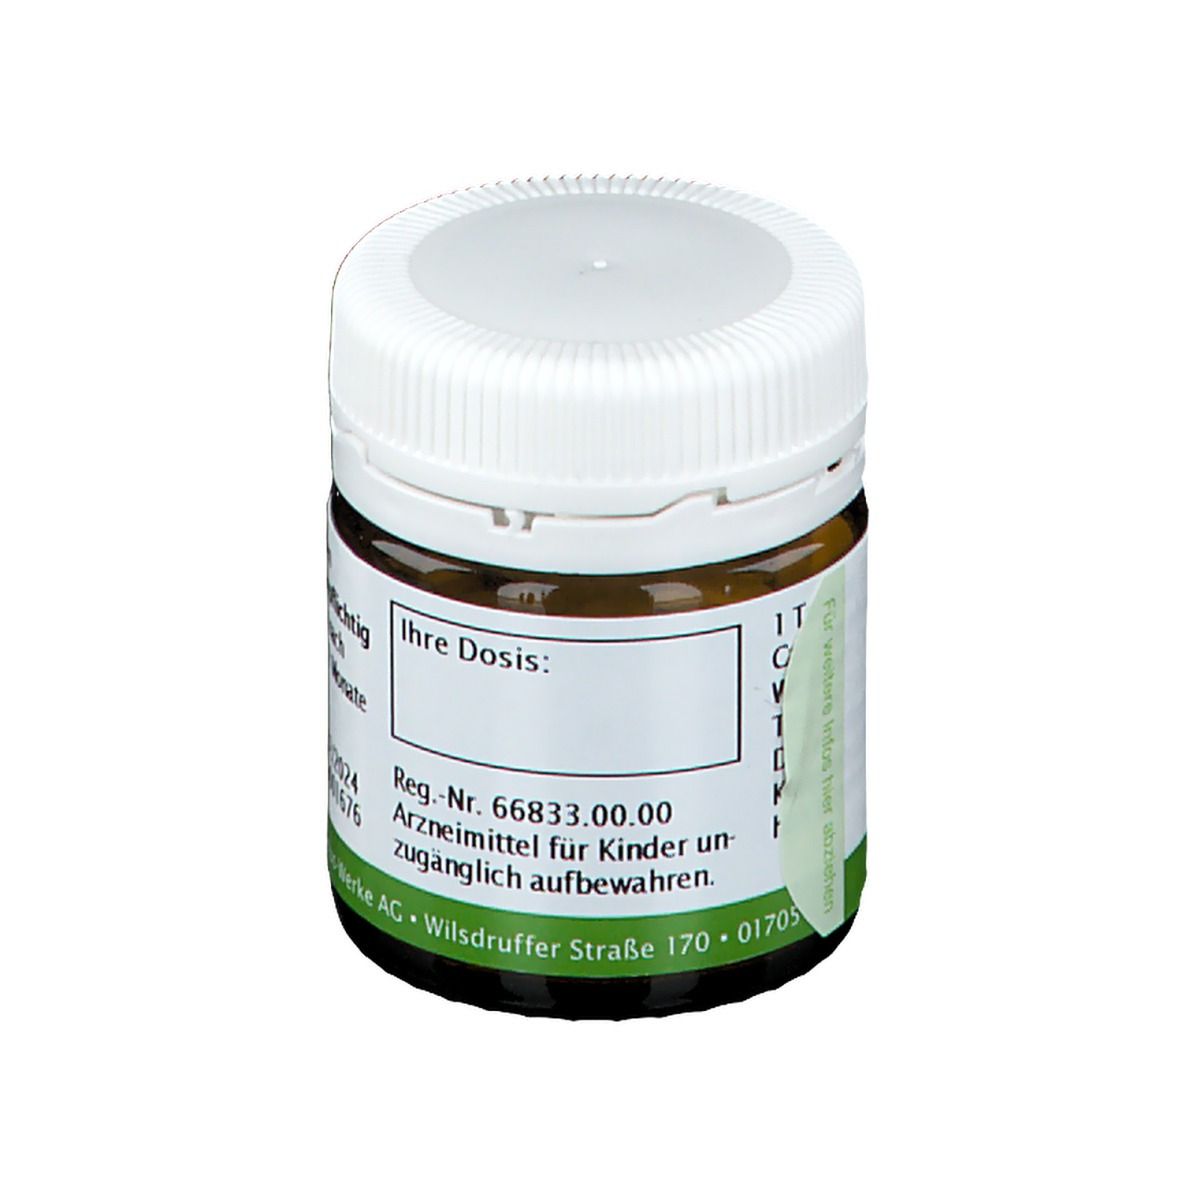 Bombastus Biochemie 2 Calcium phosphoricum D 6 Tabletten